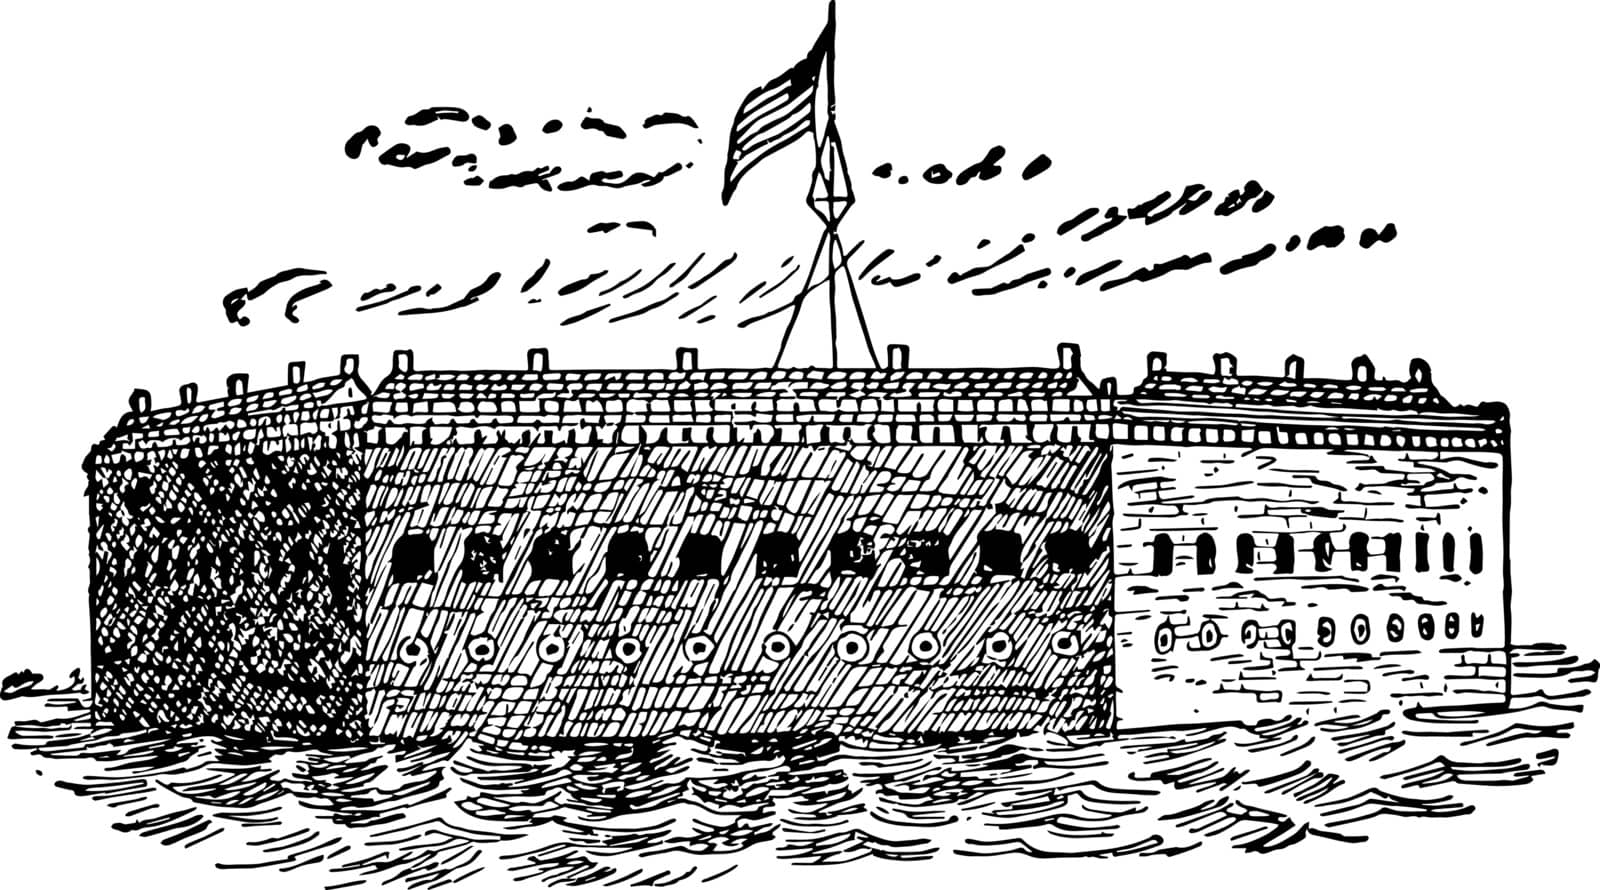 Fort Sumter formed after the war 1812 vintage line drawing.